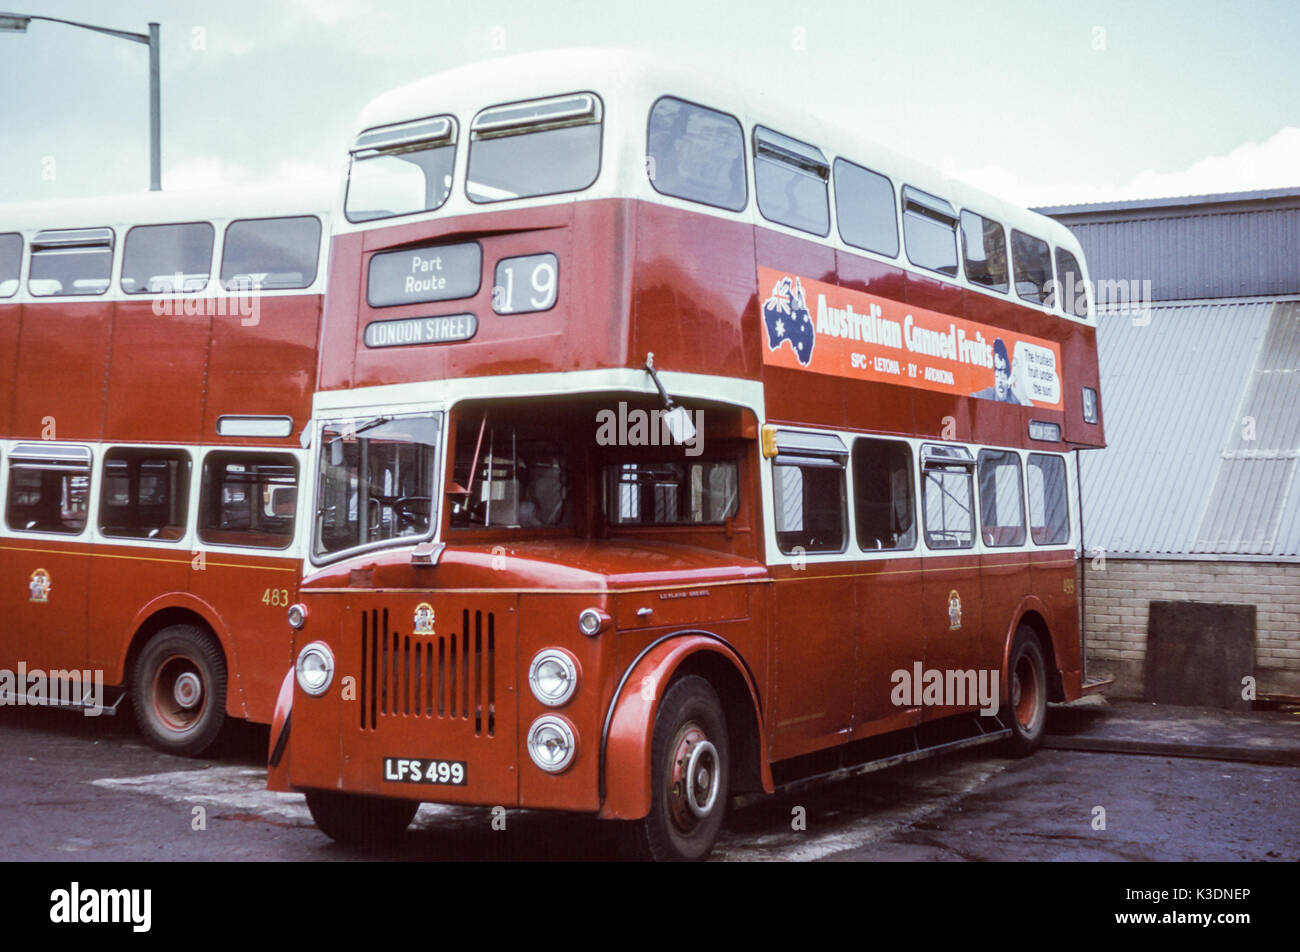 Escocia, Reino Unido - 1973: Vintage imagen de autobuses operan en 1973. Edimburgo Leyland PD MCCW2/20 (registro EPA 499). Foto de stock